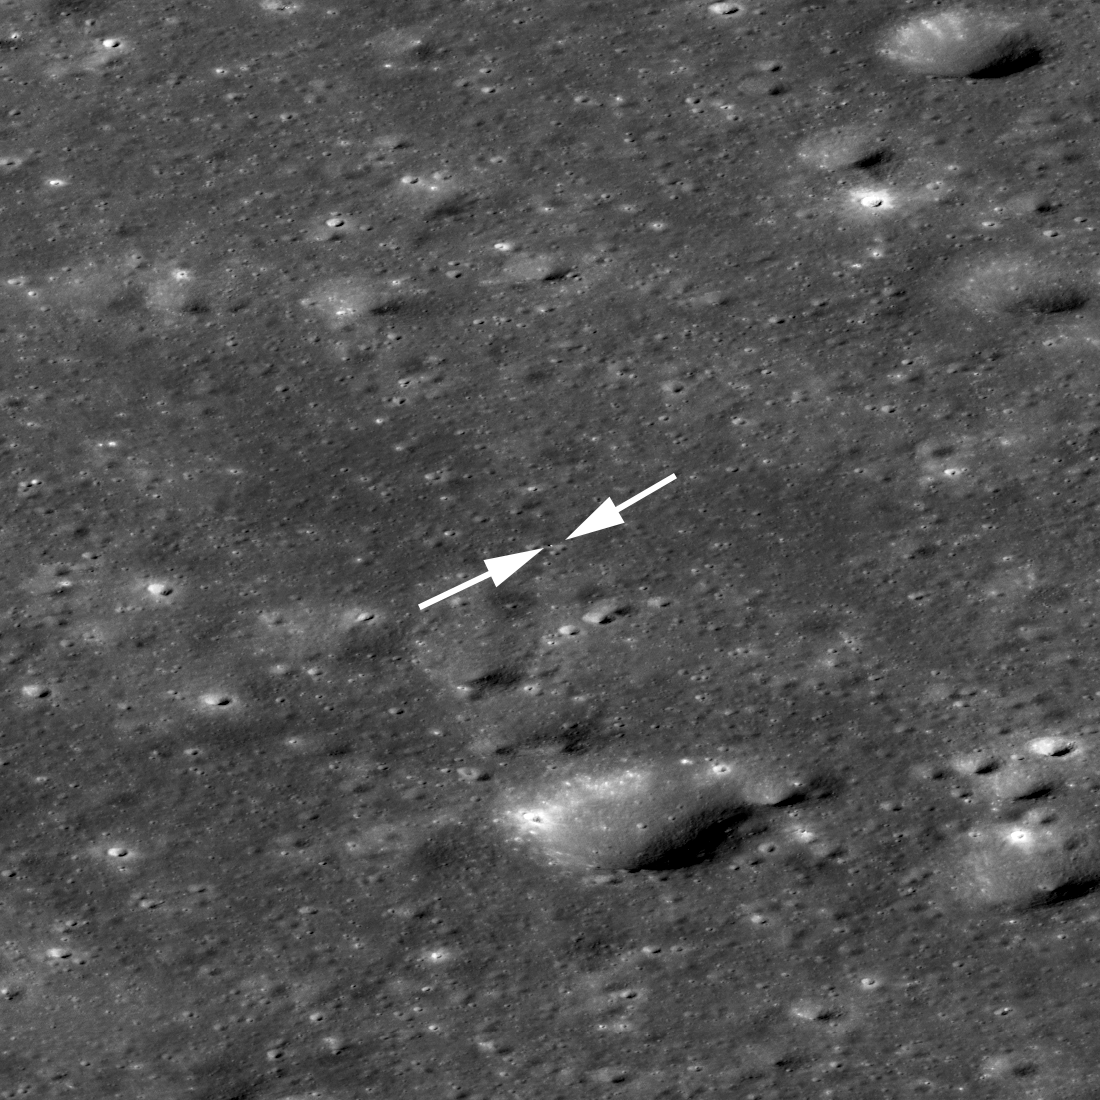 Chang'e 4 lander and rover seen obliquely